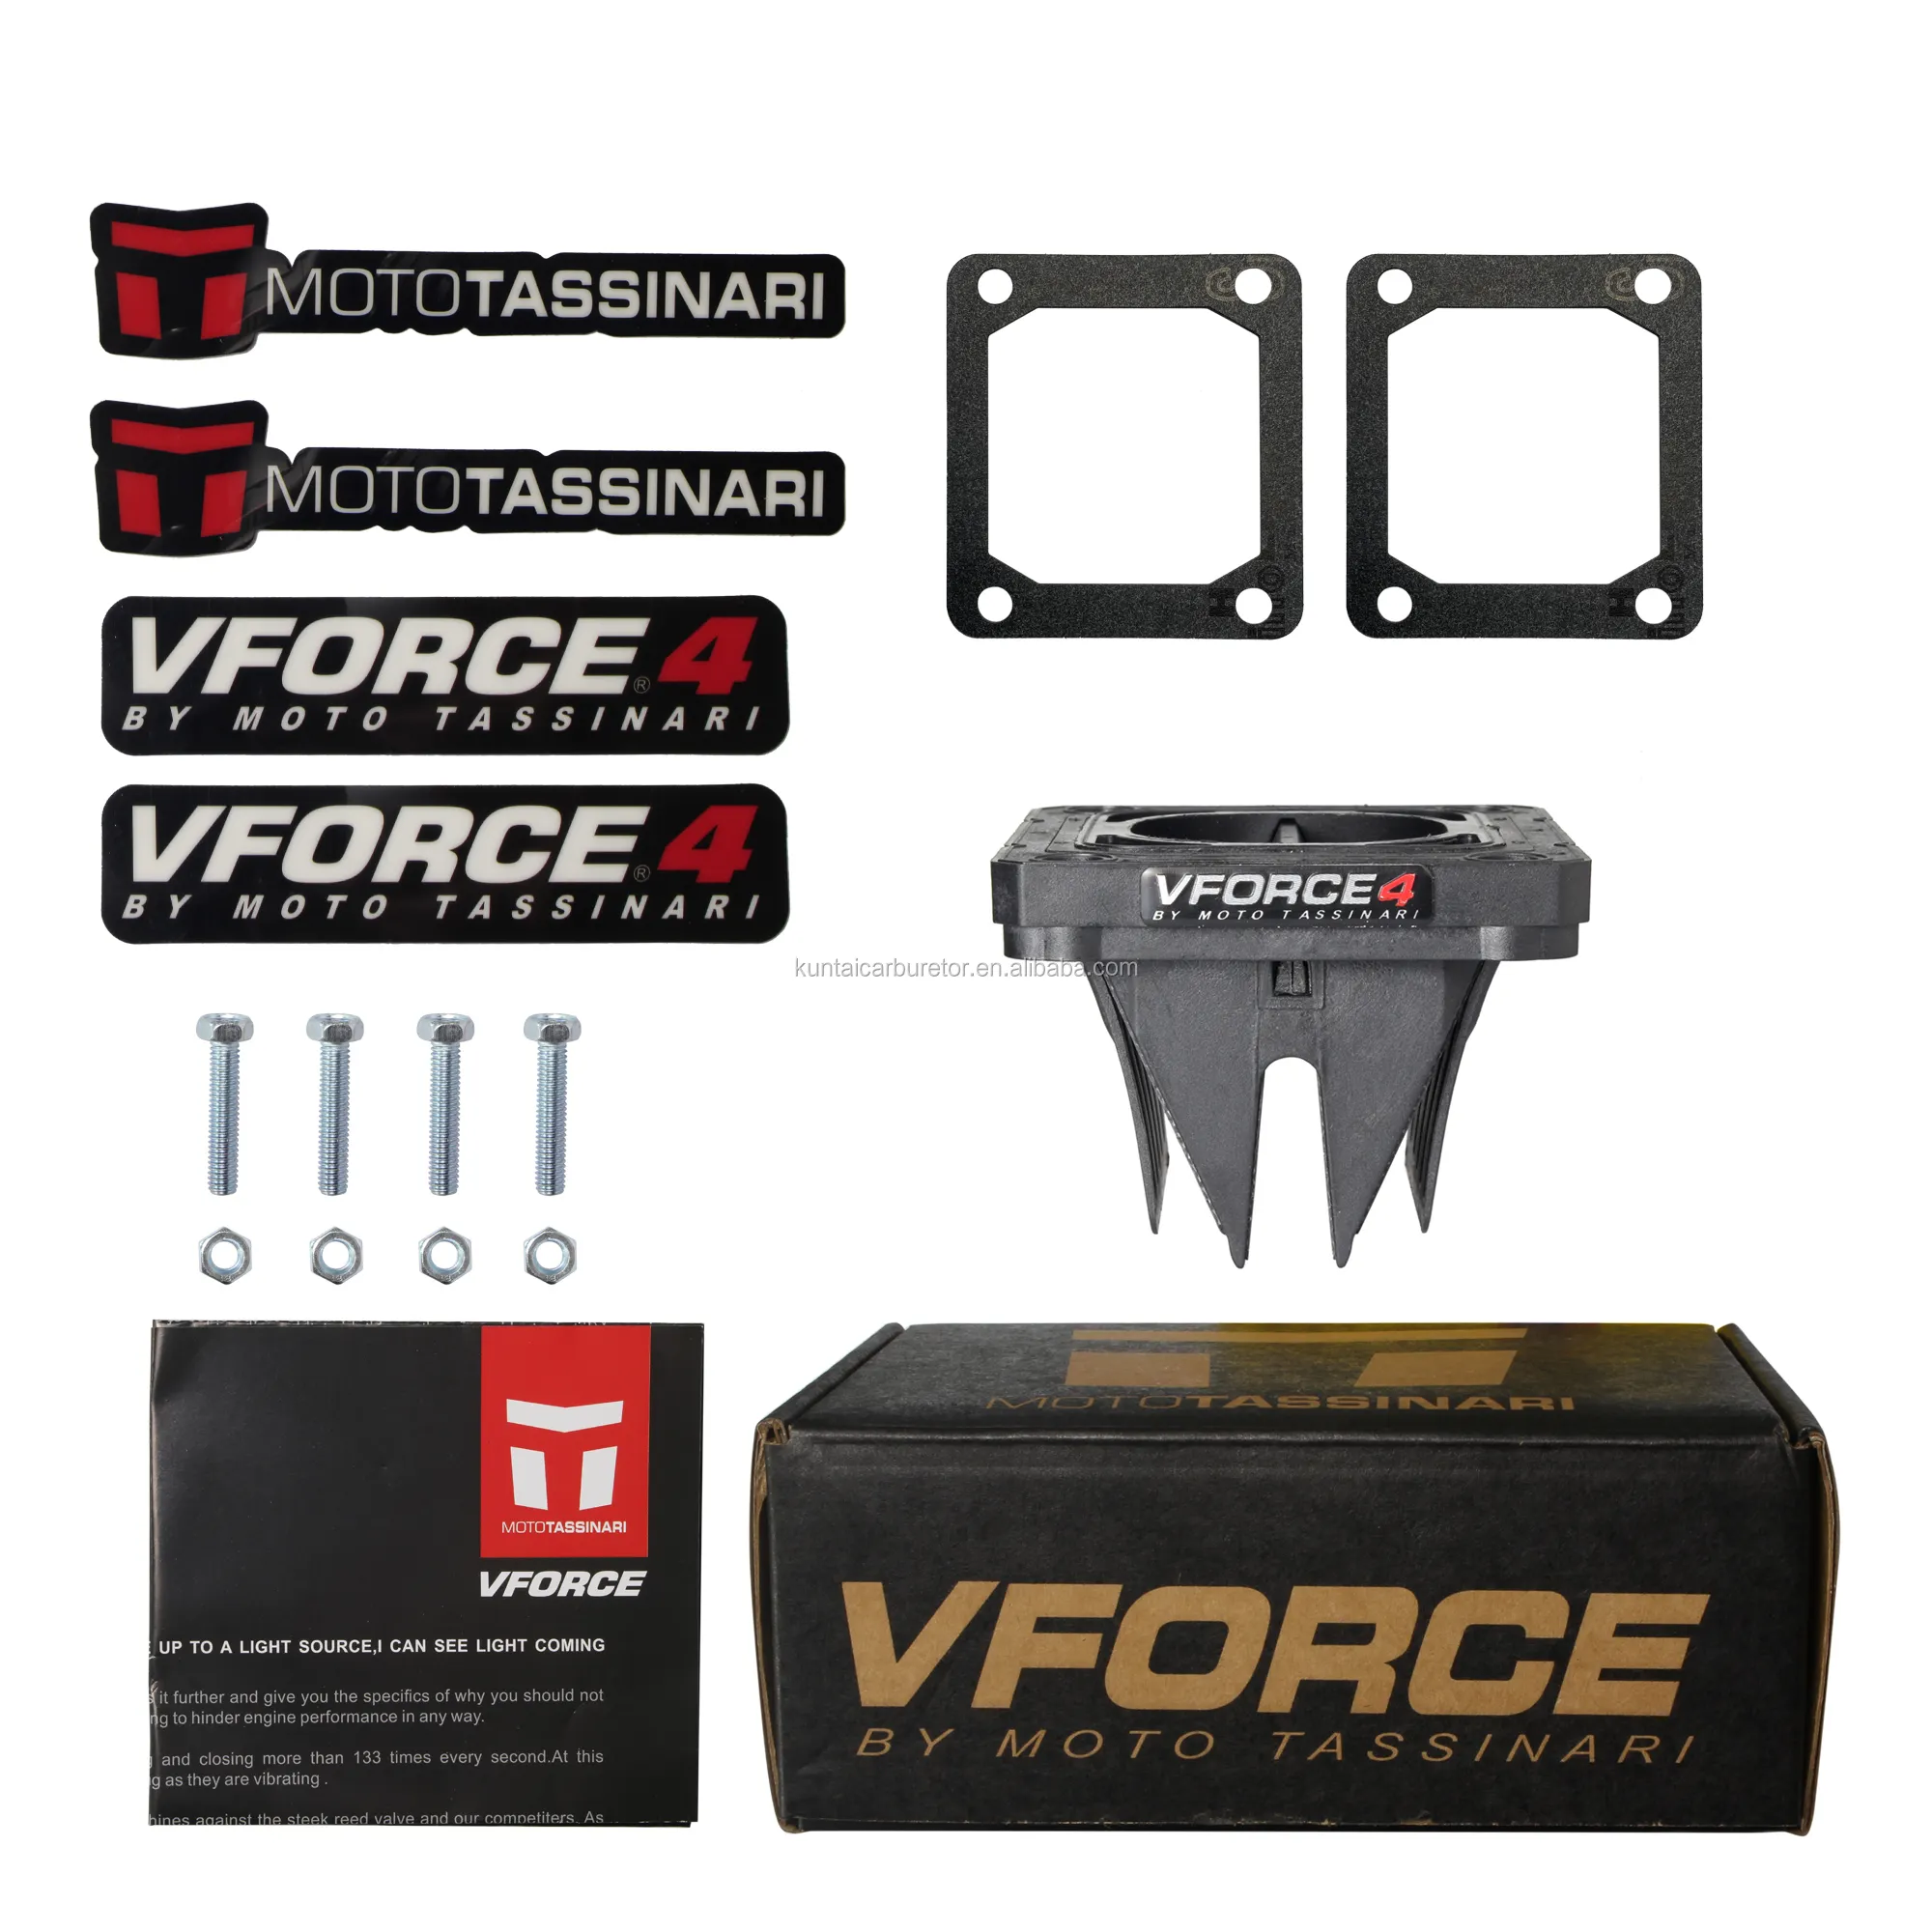 V4144 Vforce 4 Einlass-Reed-Ventil Kohle faser Für Yamaha Yzf Rz350 Yzf350 Yfz350 Rz350 Dt175 Yz125 Rx135 Atv Motorrad